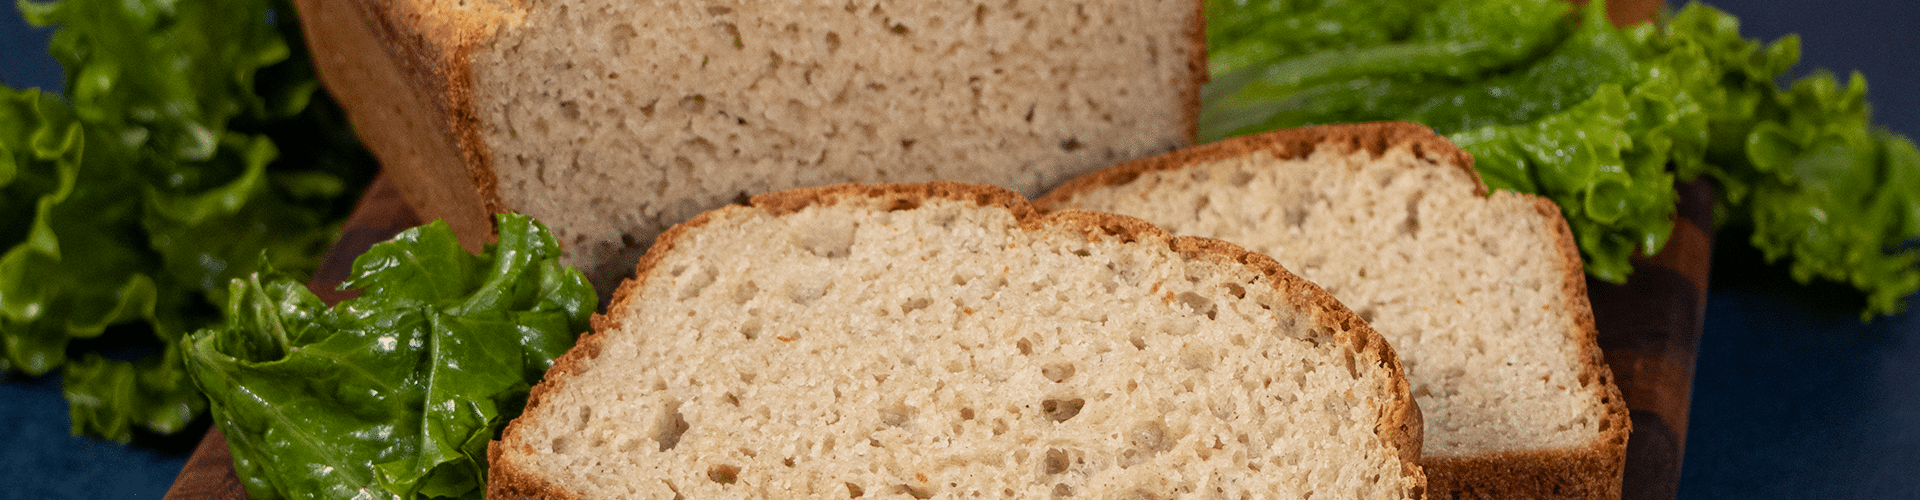 gluten free dairy free sandwich bread